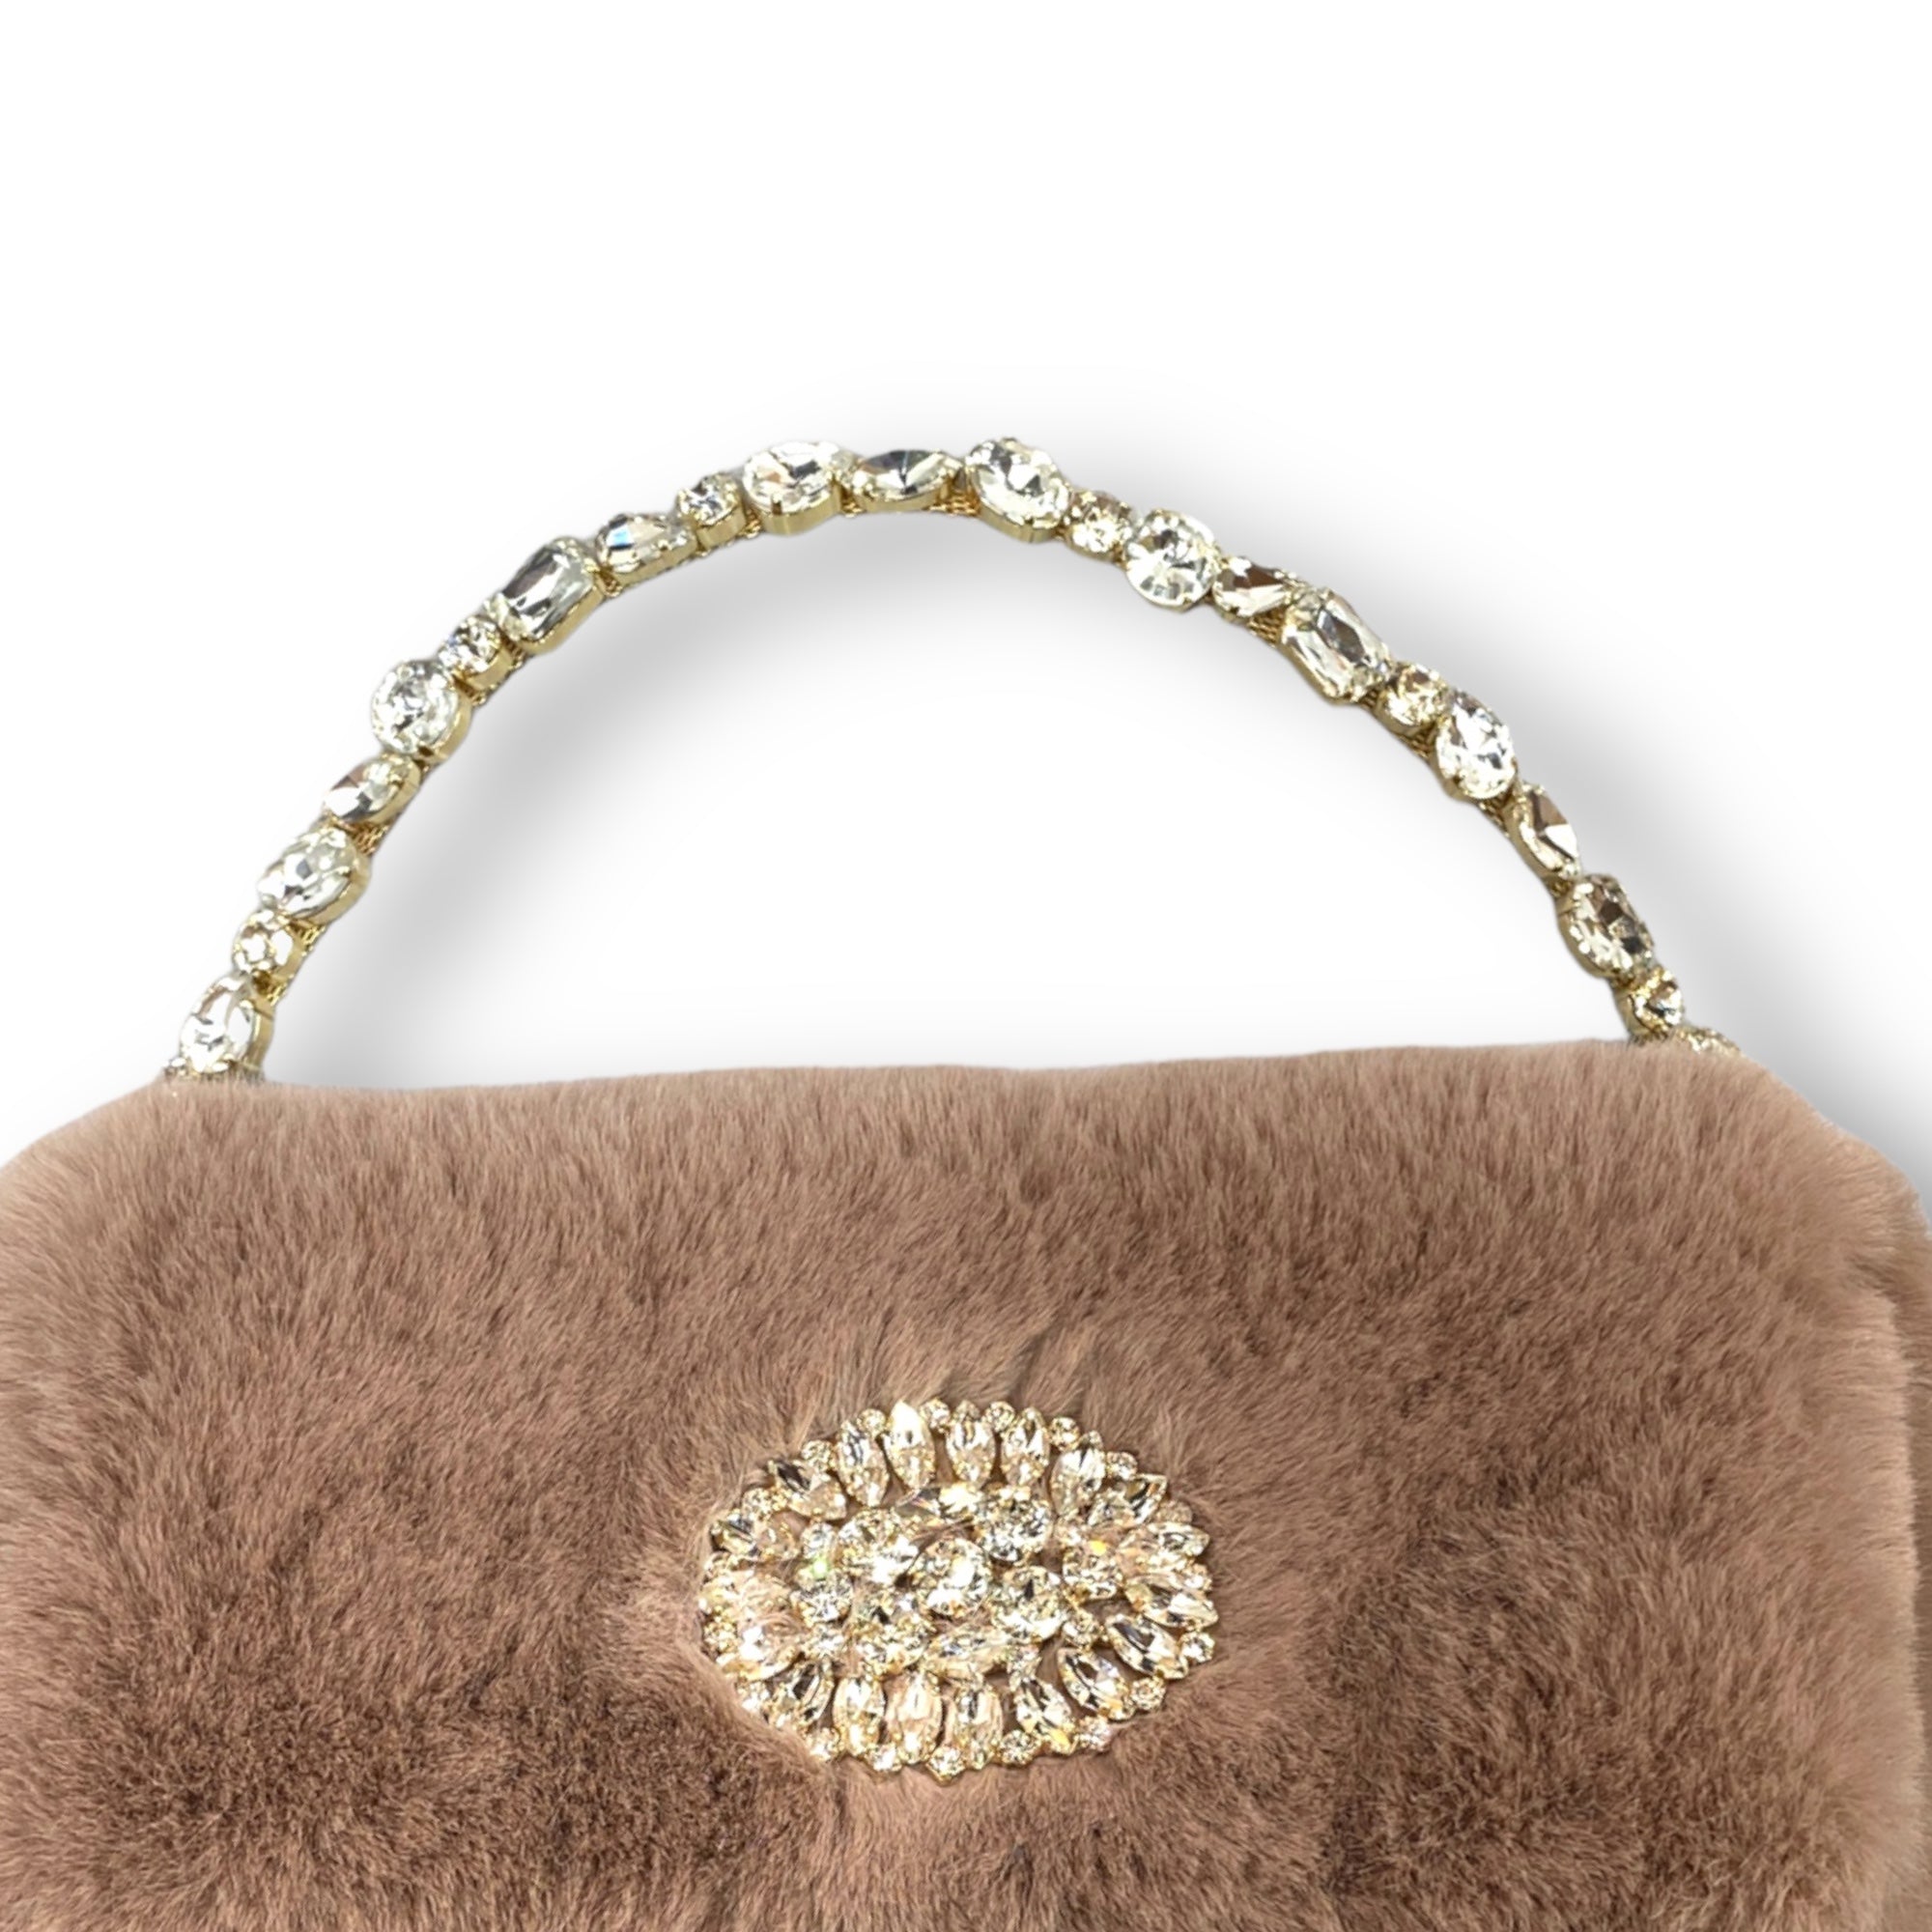 Victoria  handbag in nude pink faux fur